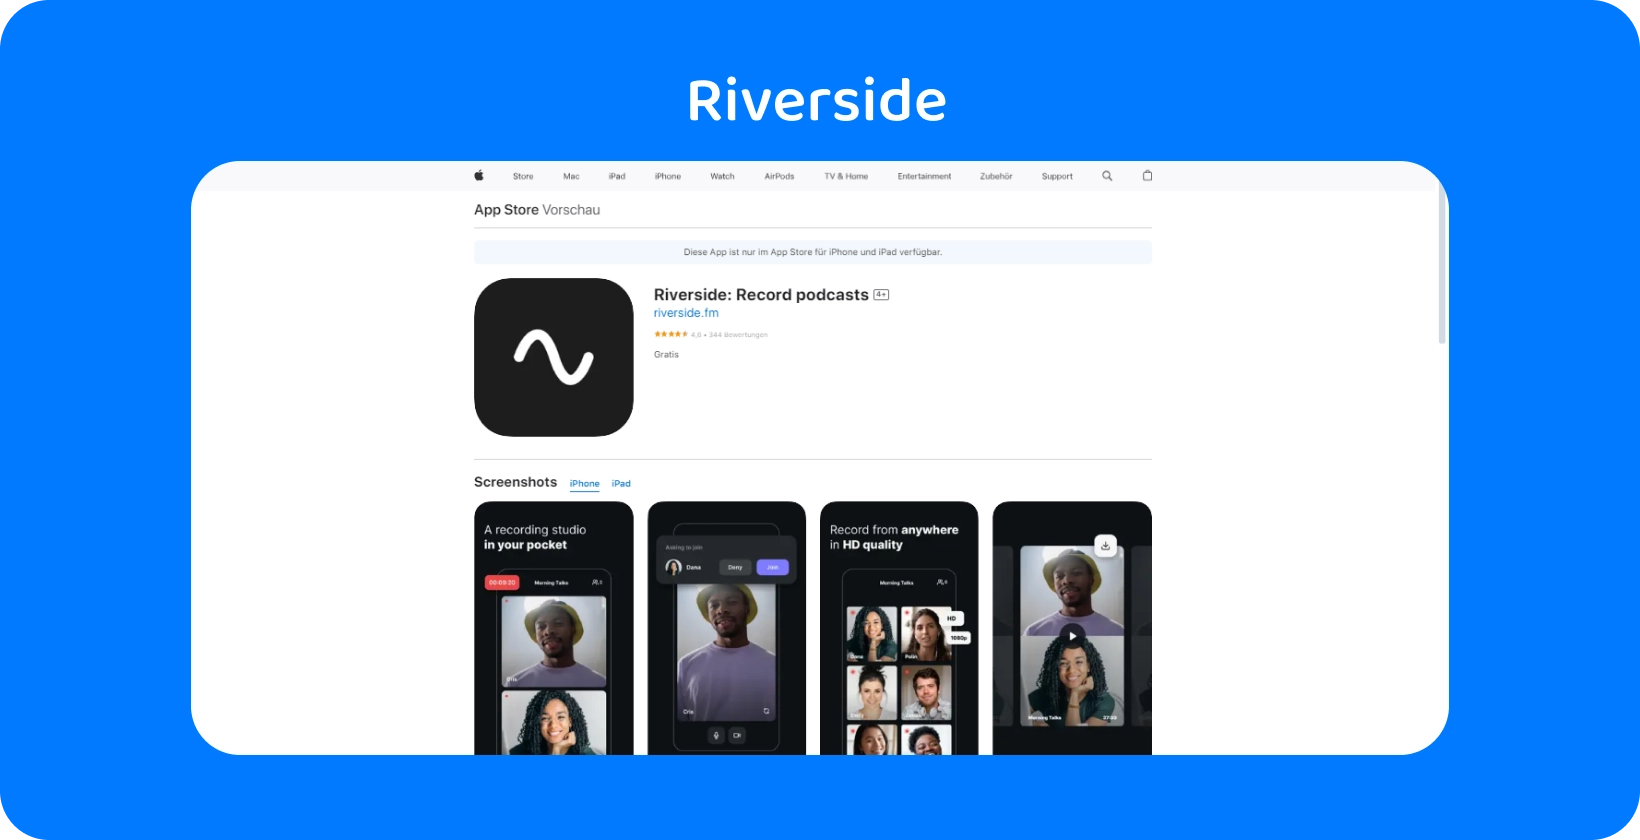 אפליקציית Riverside App Store המציגה כלים להקלטת פודקאסטים באיכות גבוהה ולראיונות מרחוק.